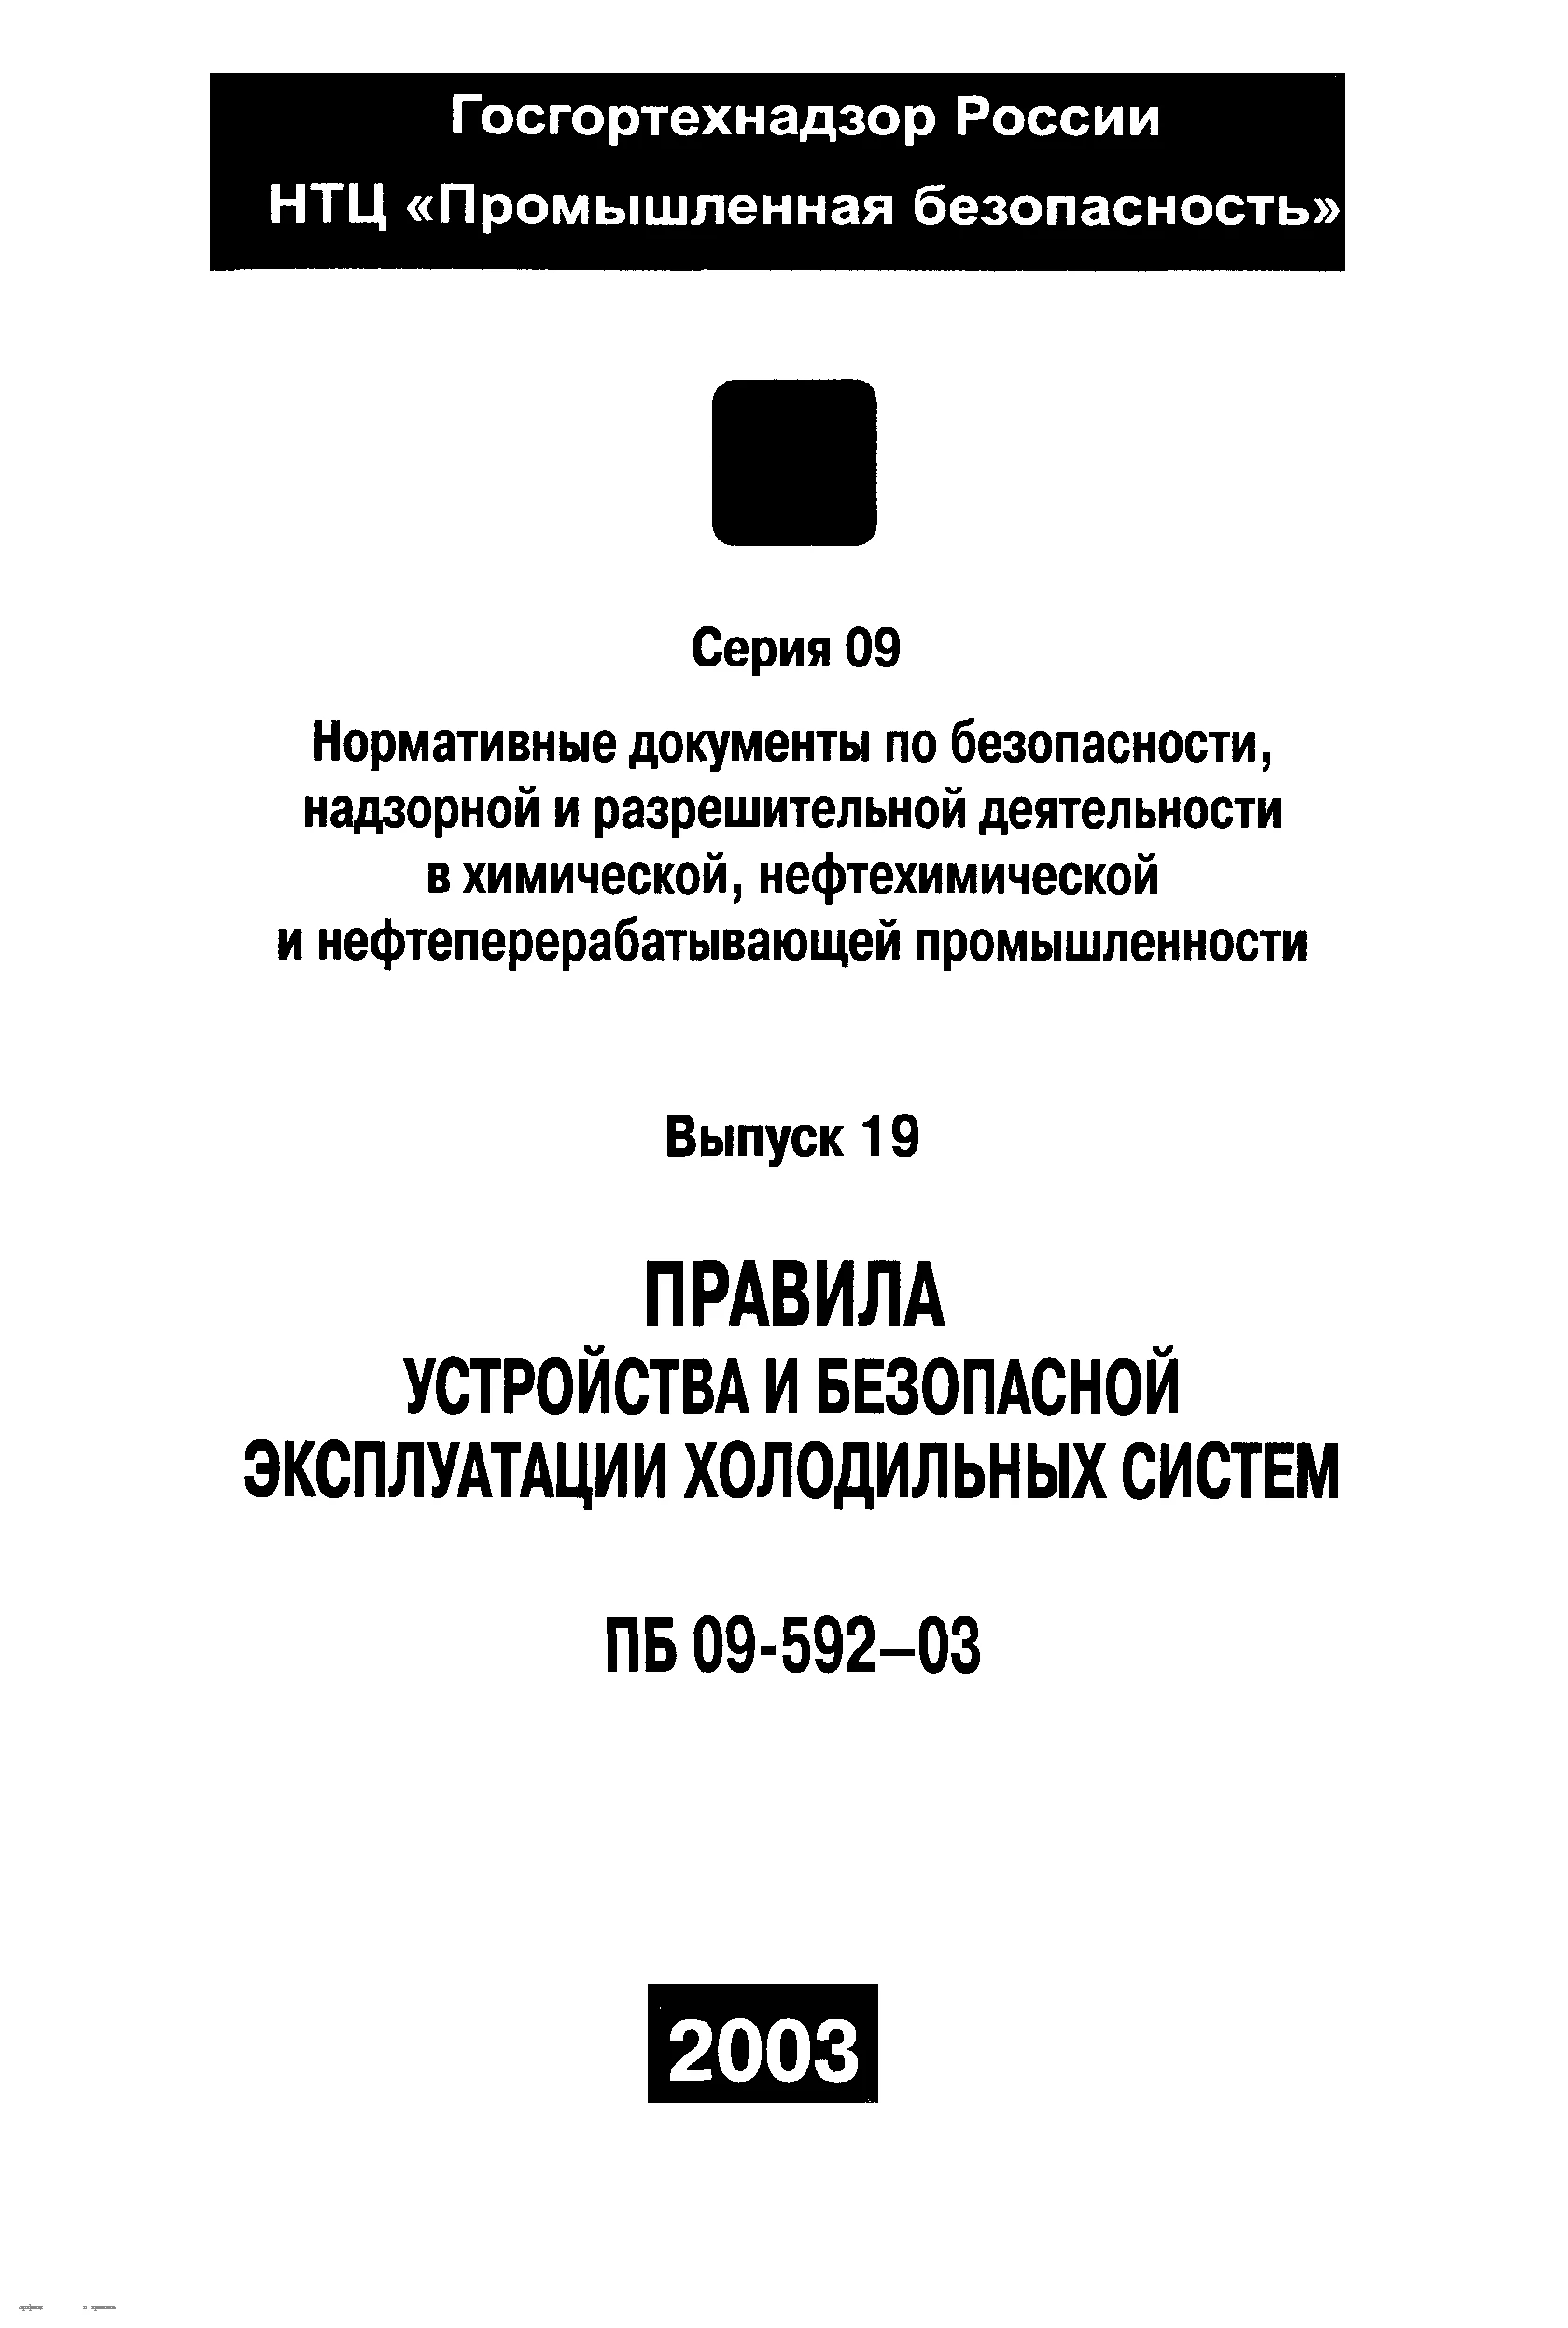 ПБ 09-592-03. Правила устройства и безопасной эксплуатации холодильных систем